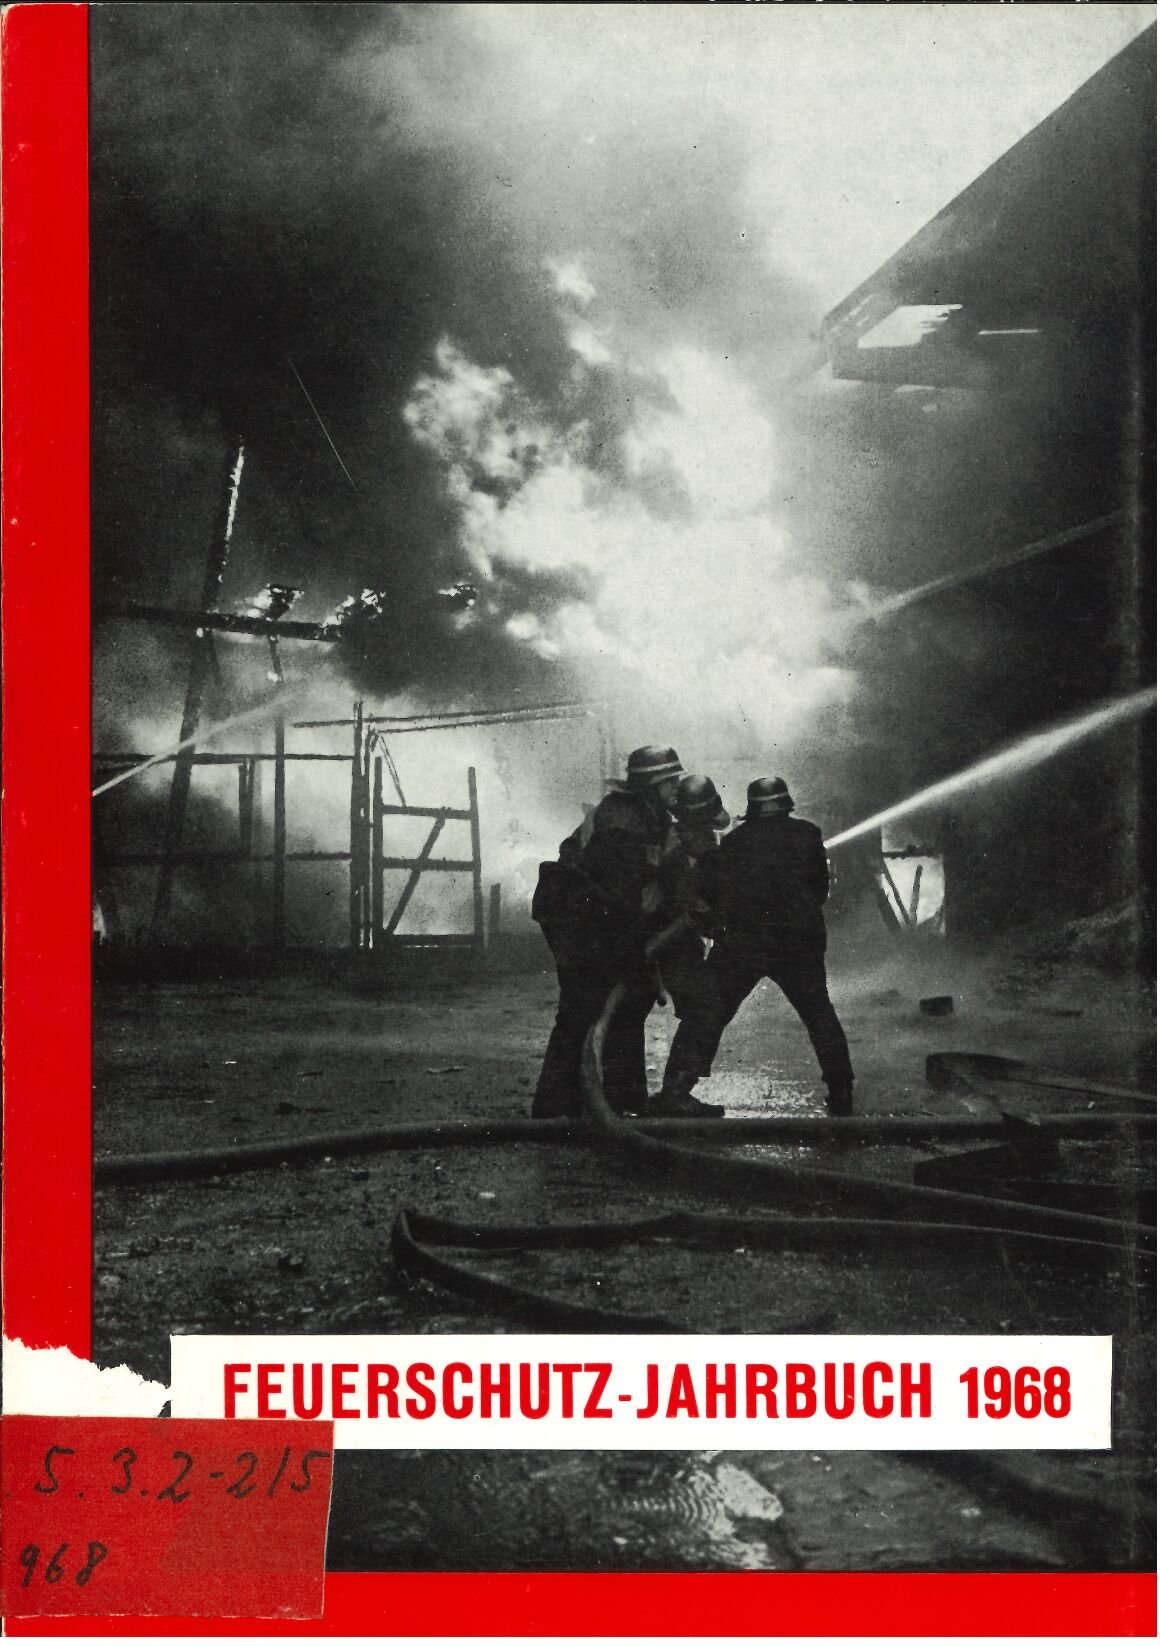 Feuerschutz-Jahrbuch 1968 (Feuerwehrmuseum Grethen CC BY-NC-SA)